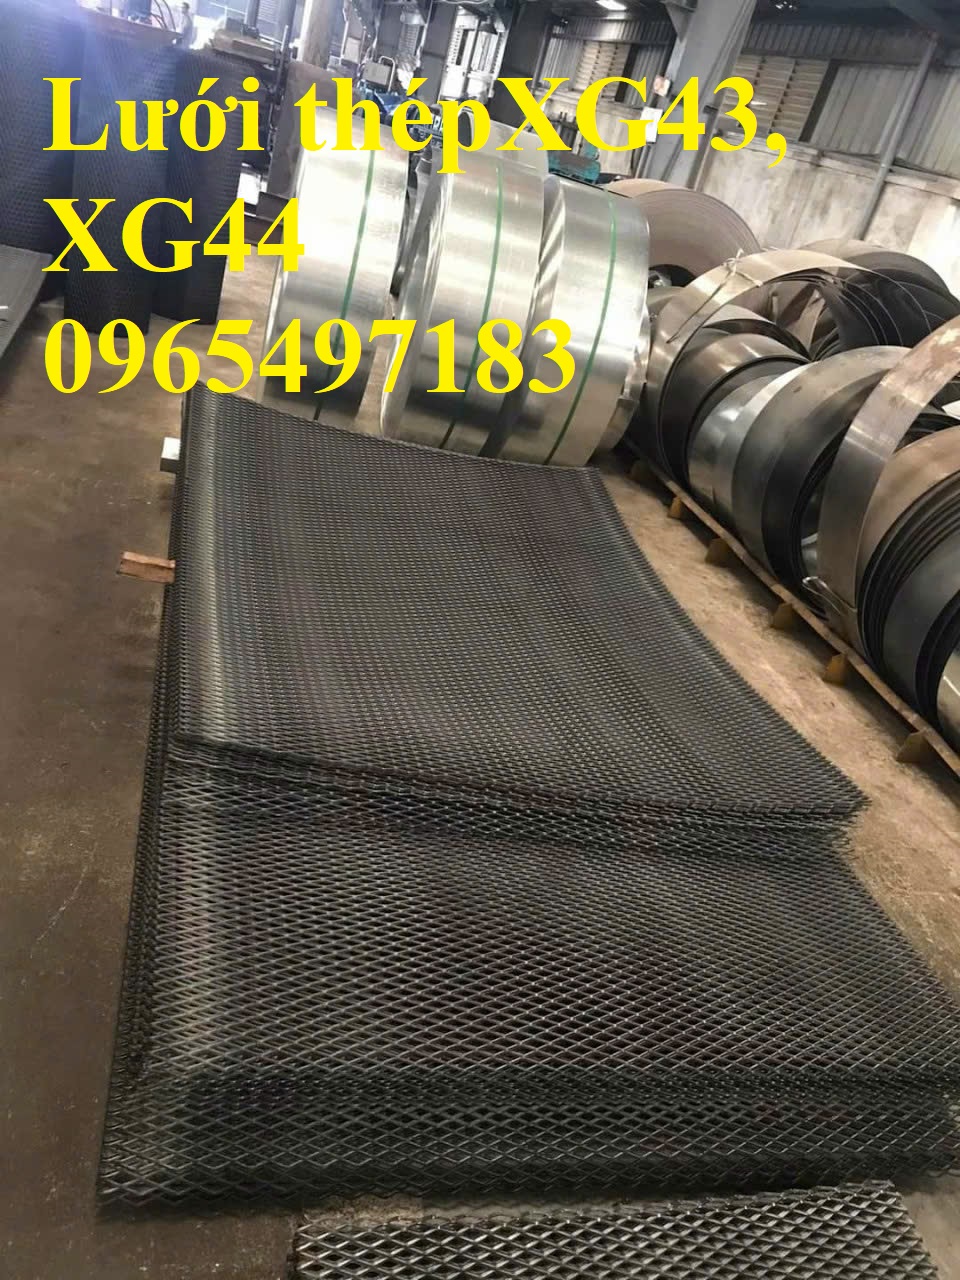 Lưới dập giãn XG19, XG20, XG21, XG42, XG43 có sẵn tại Hà Nội